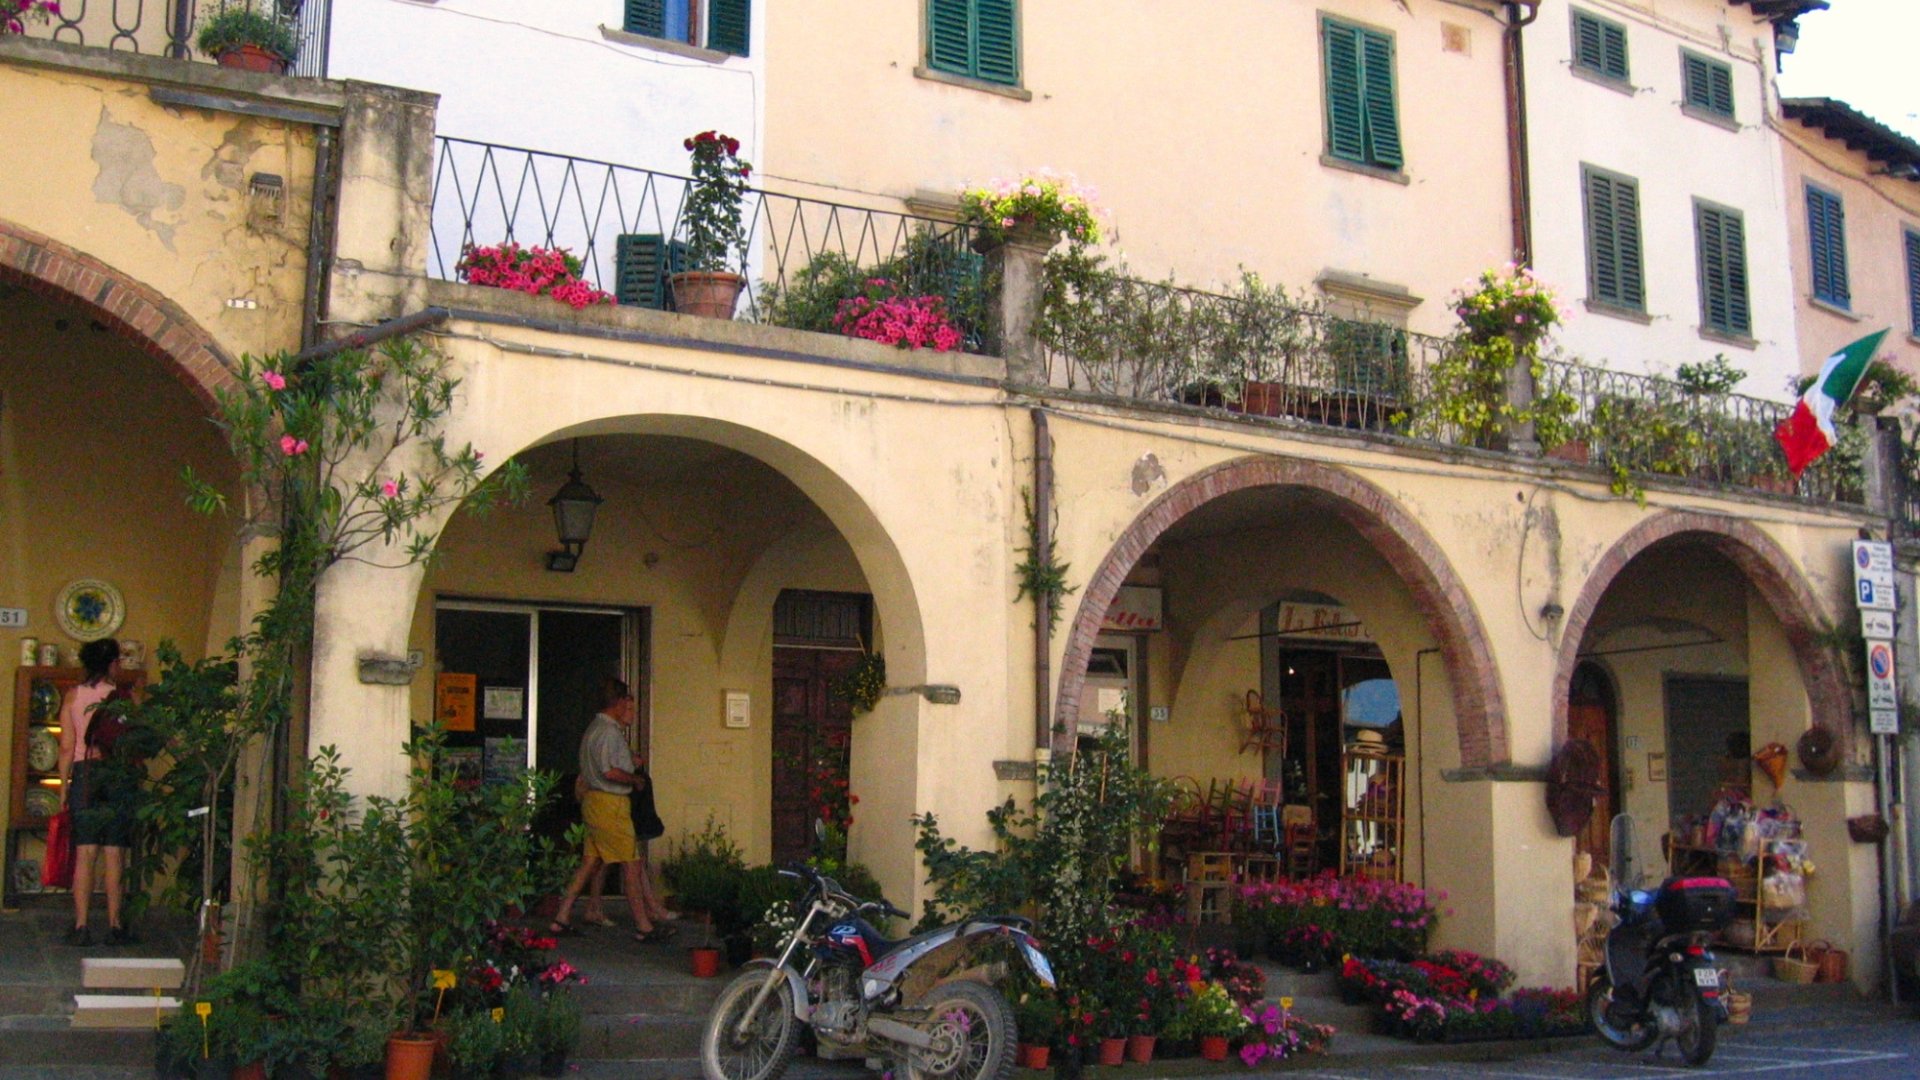 Main square of Greve in Chianti